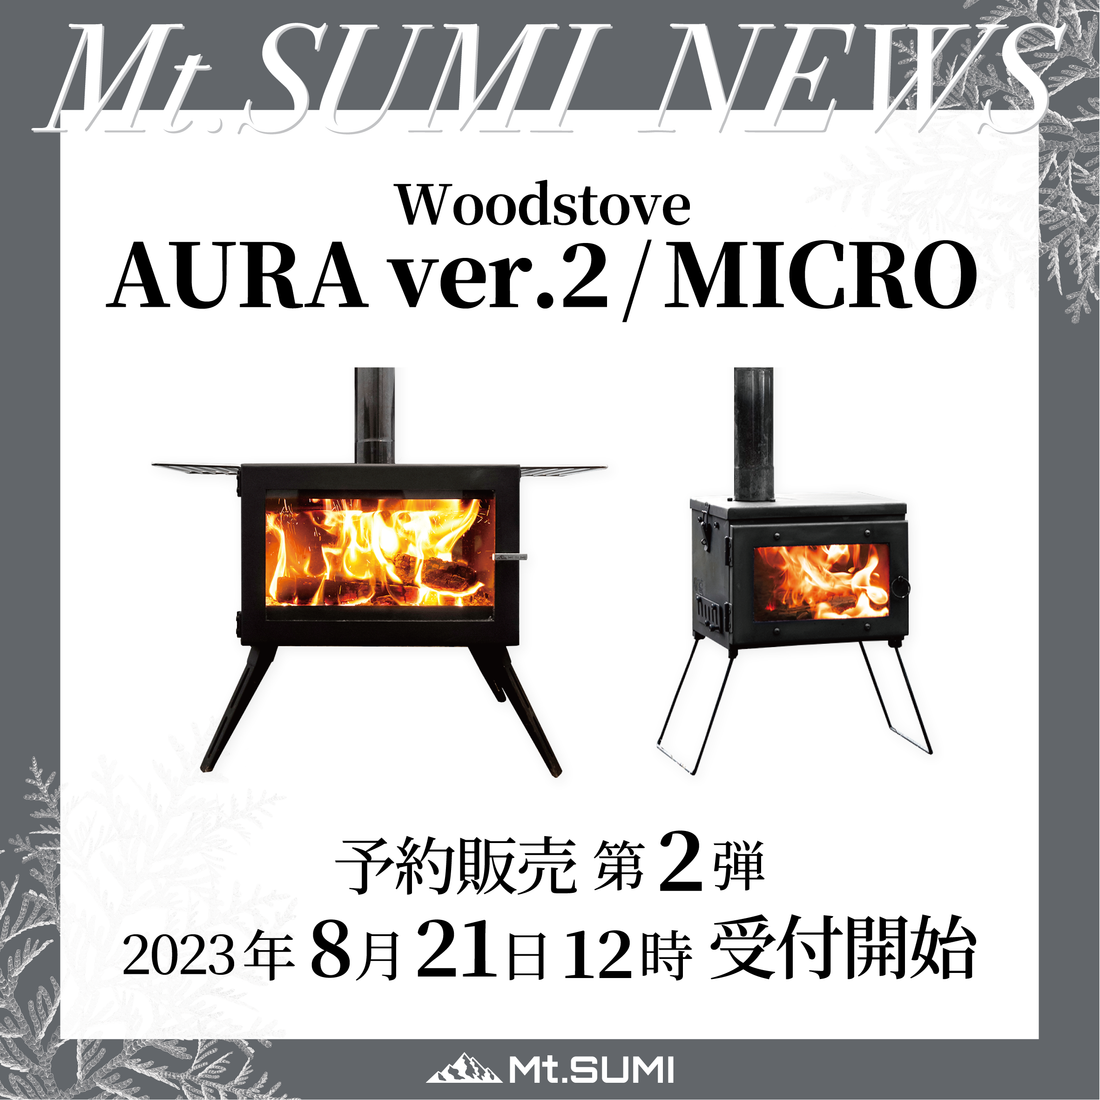 【発売情報】「AURA ver.2」「MICRO」 「煙突ガード ver.2」予約販売 第2弾 受付開始日時のお知らせ